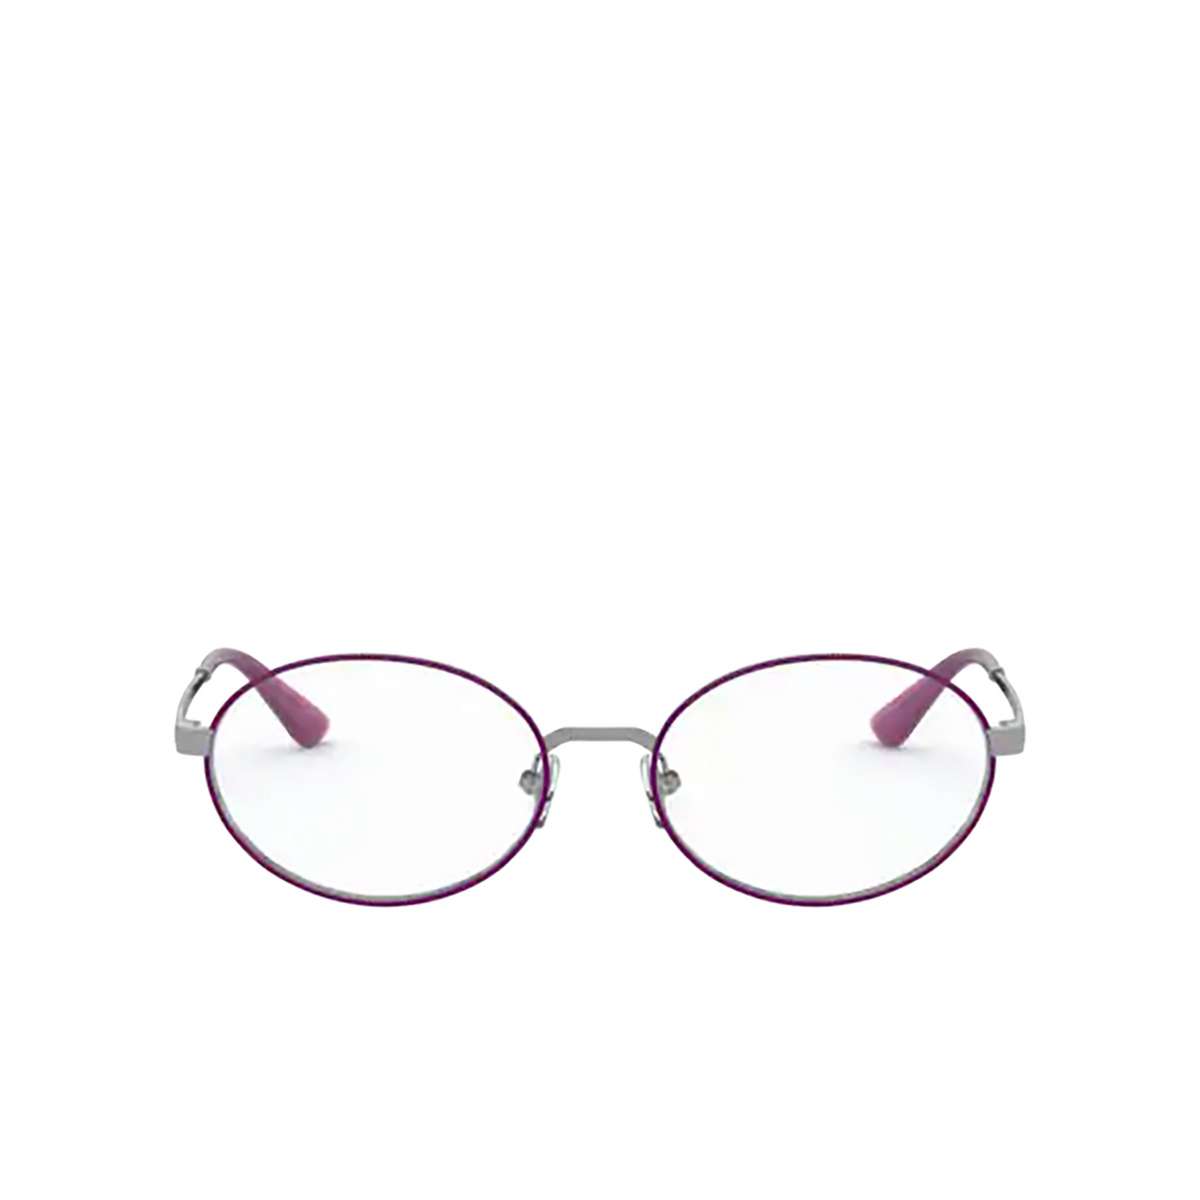 Vogue® Oval Eyeglasses: VO4190 color Gunmetal / Violet 548 - front view.